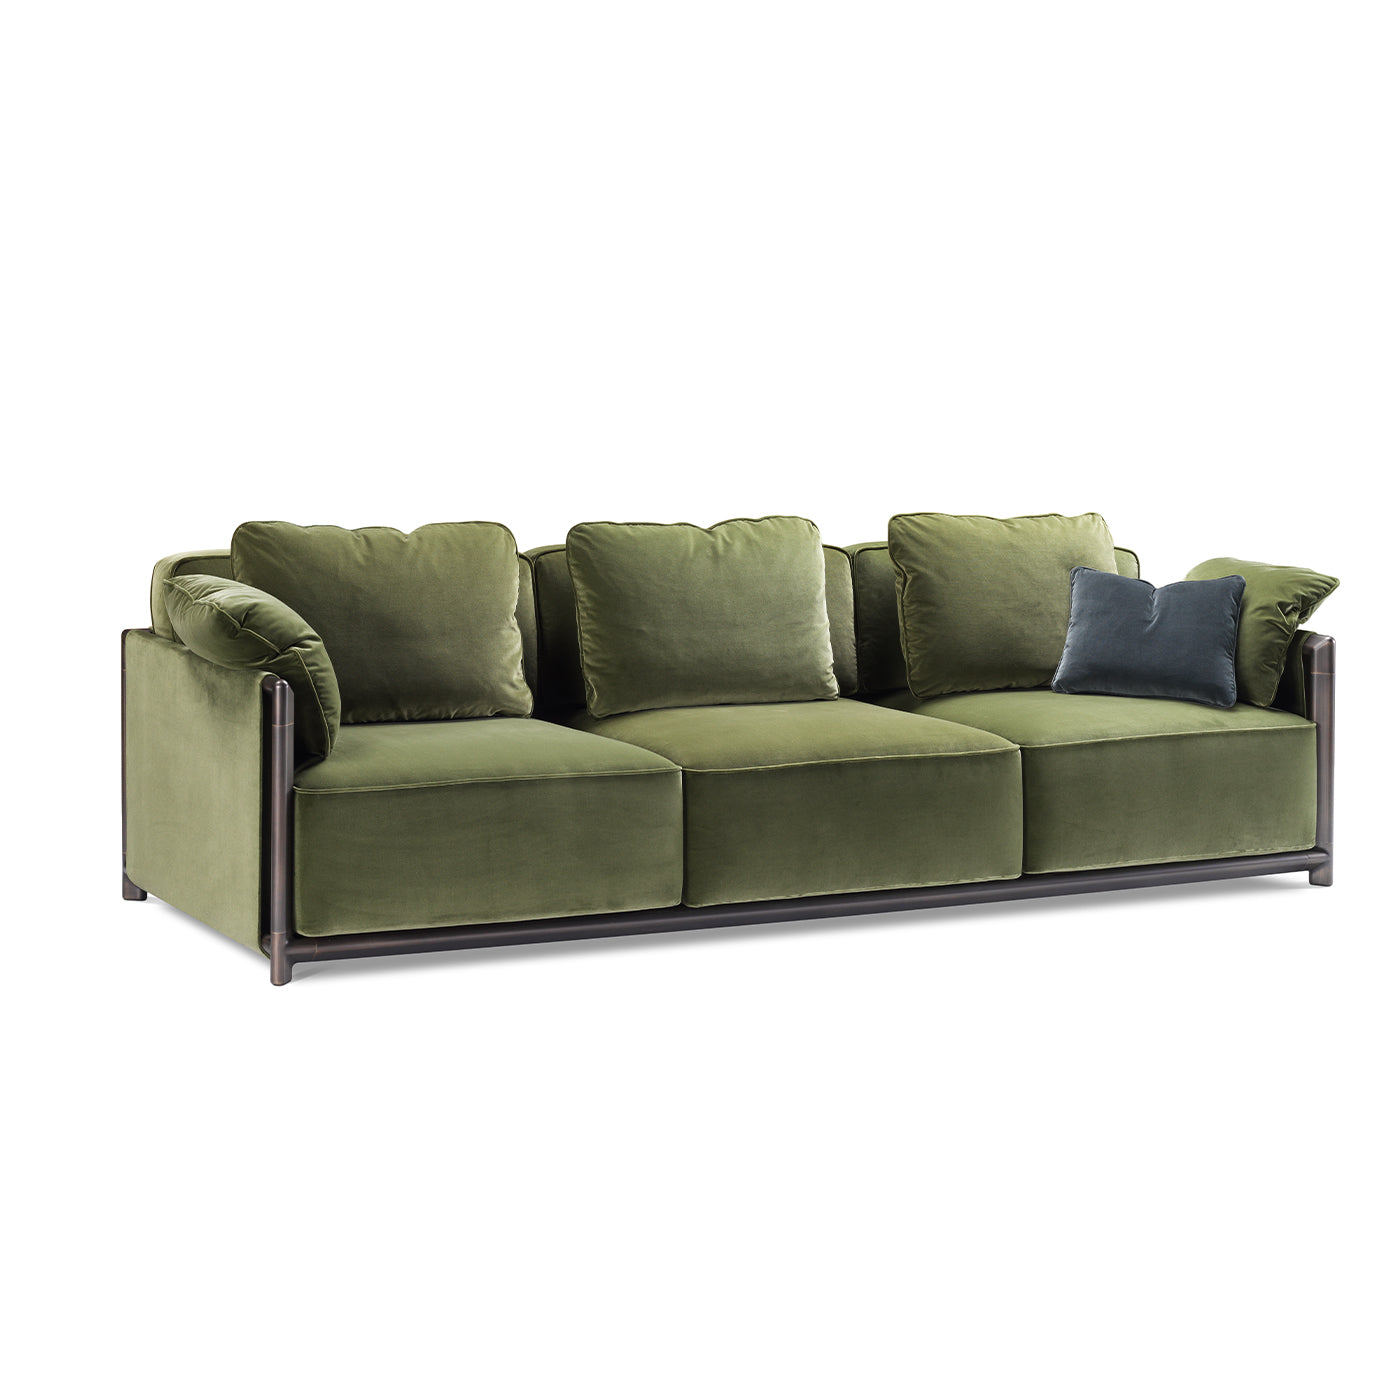 Dodo Green Sofa by Stefano Giovannoni - Alternative view 1